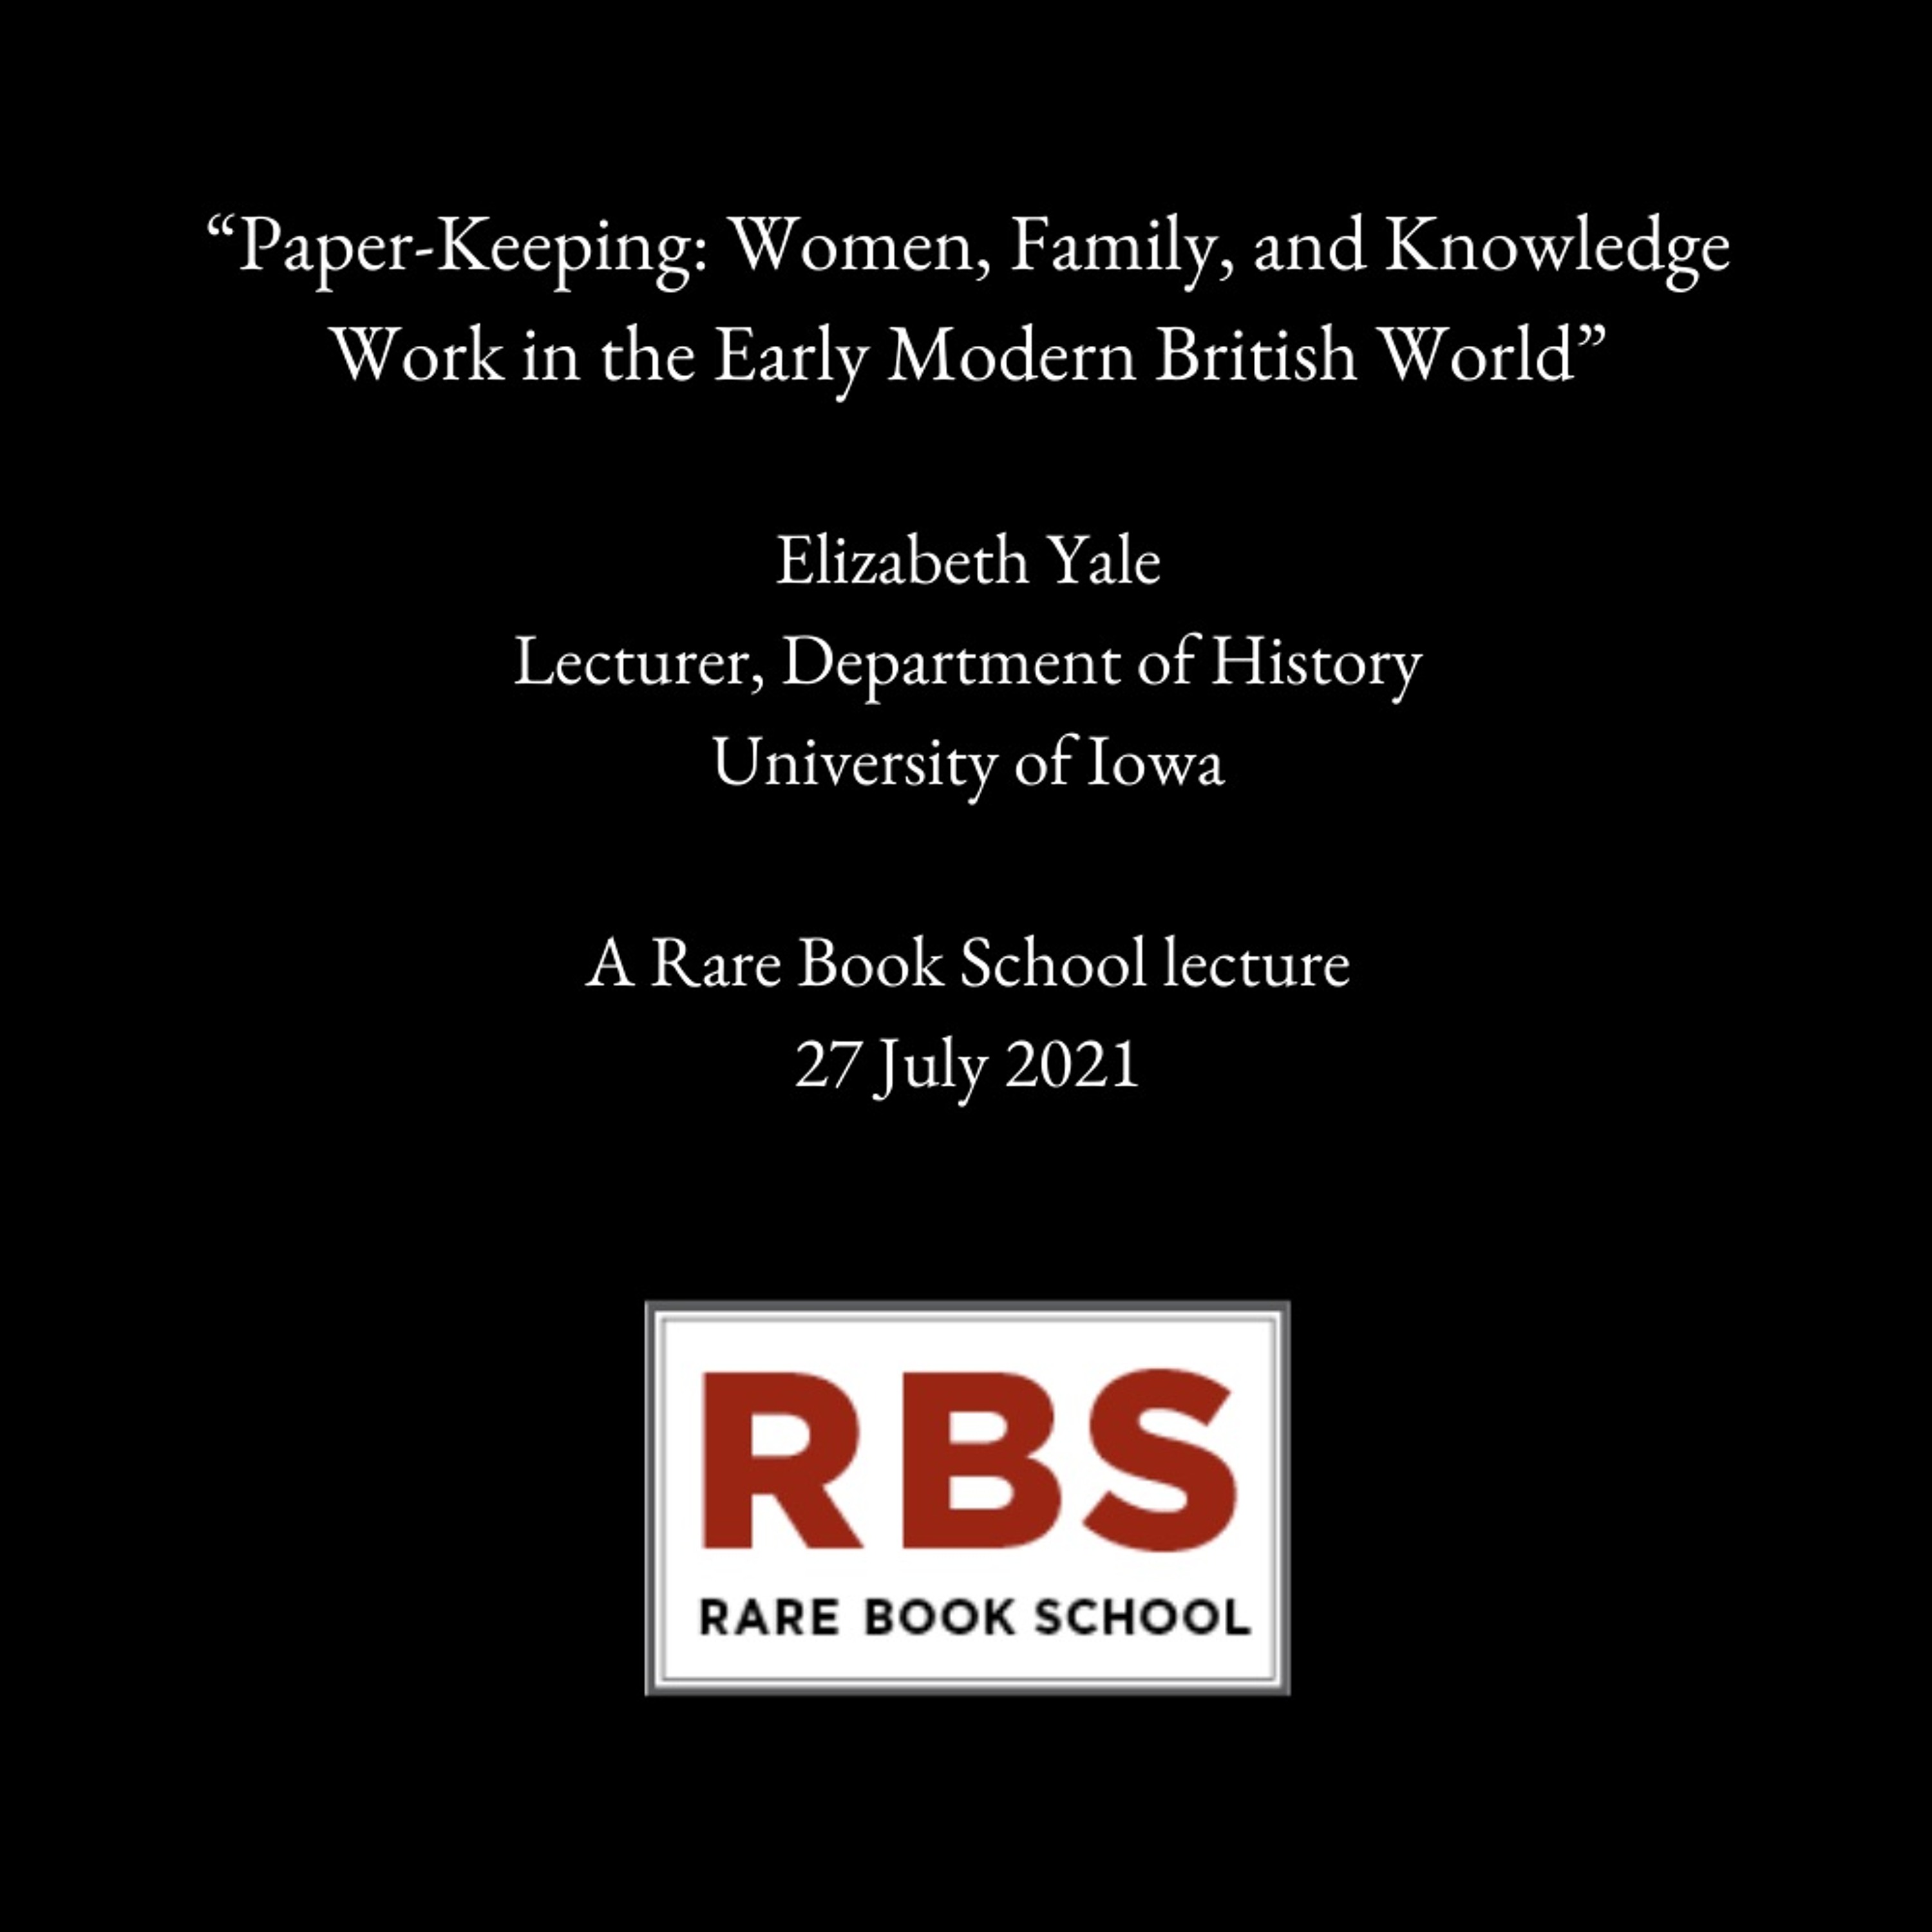 Yale, Elizabeth - ”Paper-Keeping: Women, Family, Knowledge Work...” - 27 July 2021